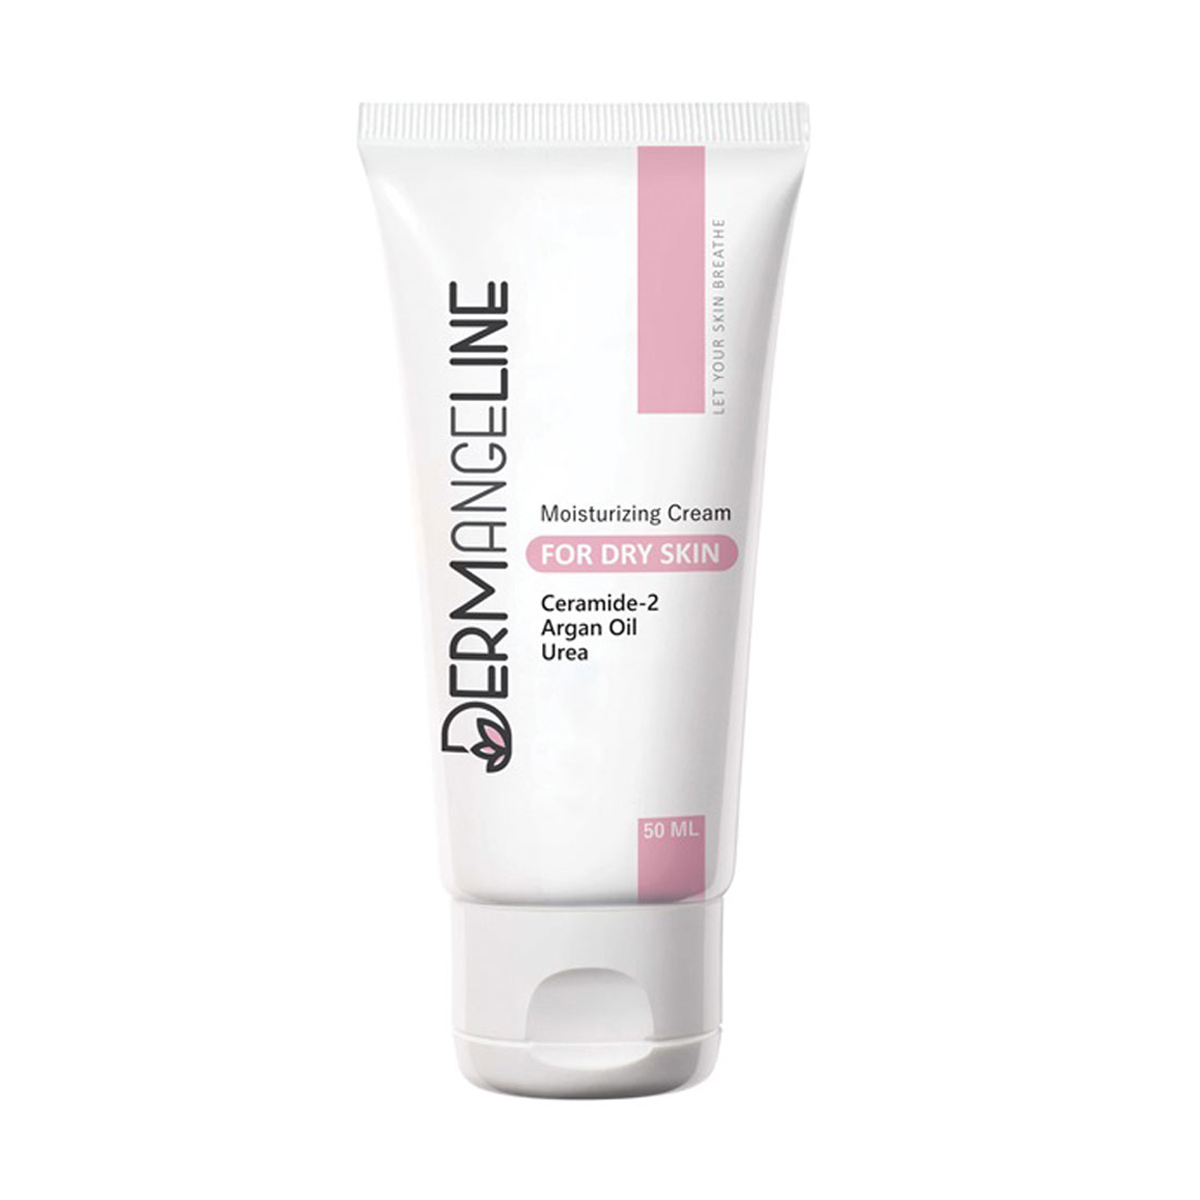 کرم مرطوب کننده مناسب پوست خشک ~Moisturizing Cream For Dry Skin~DERMANGELINE